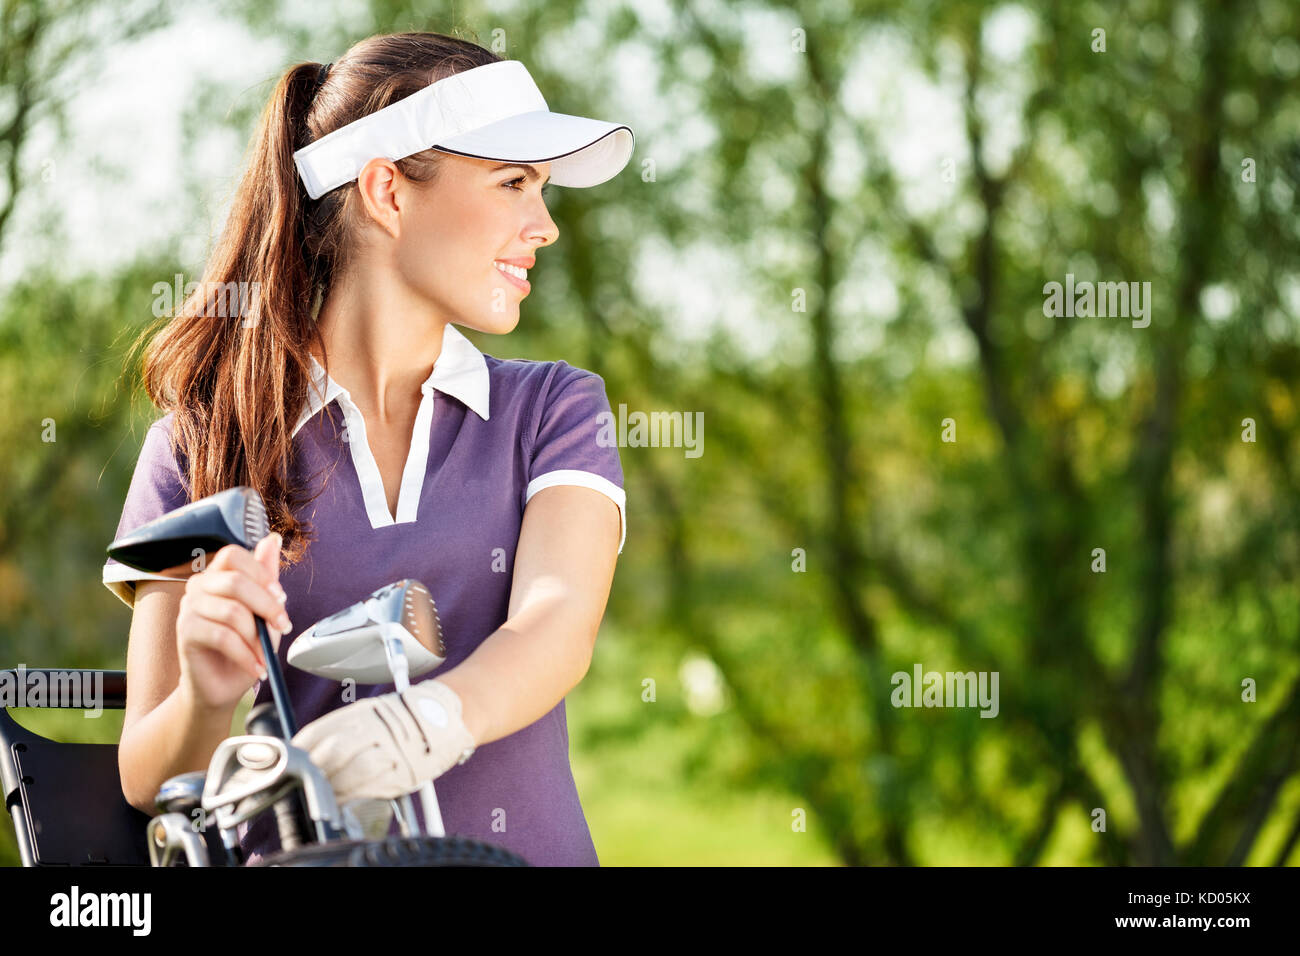 Golfeur dame magnifique avec l'équipement de golf Banque D'Images